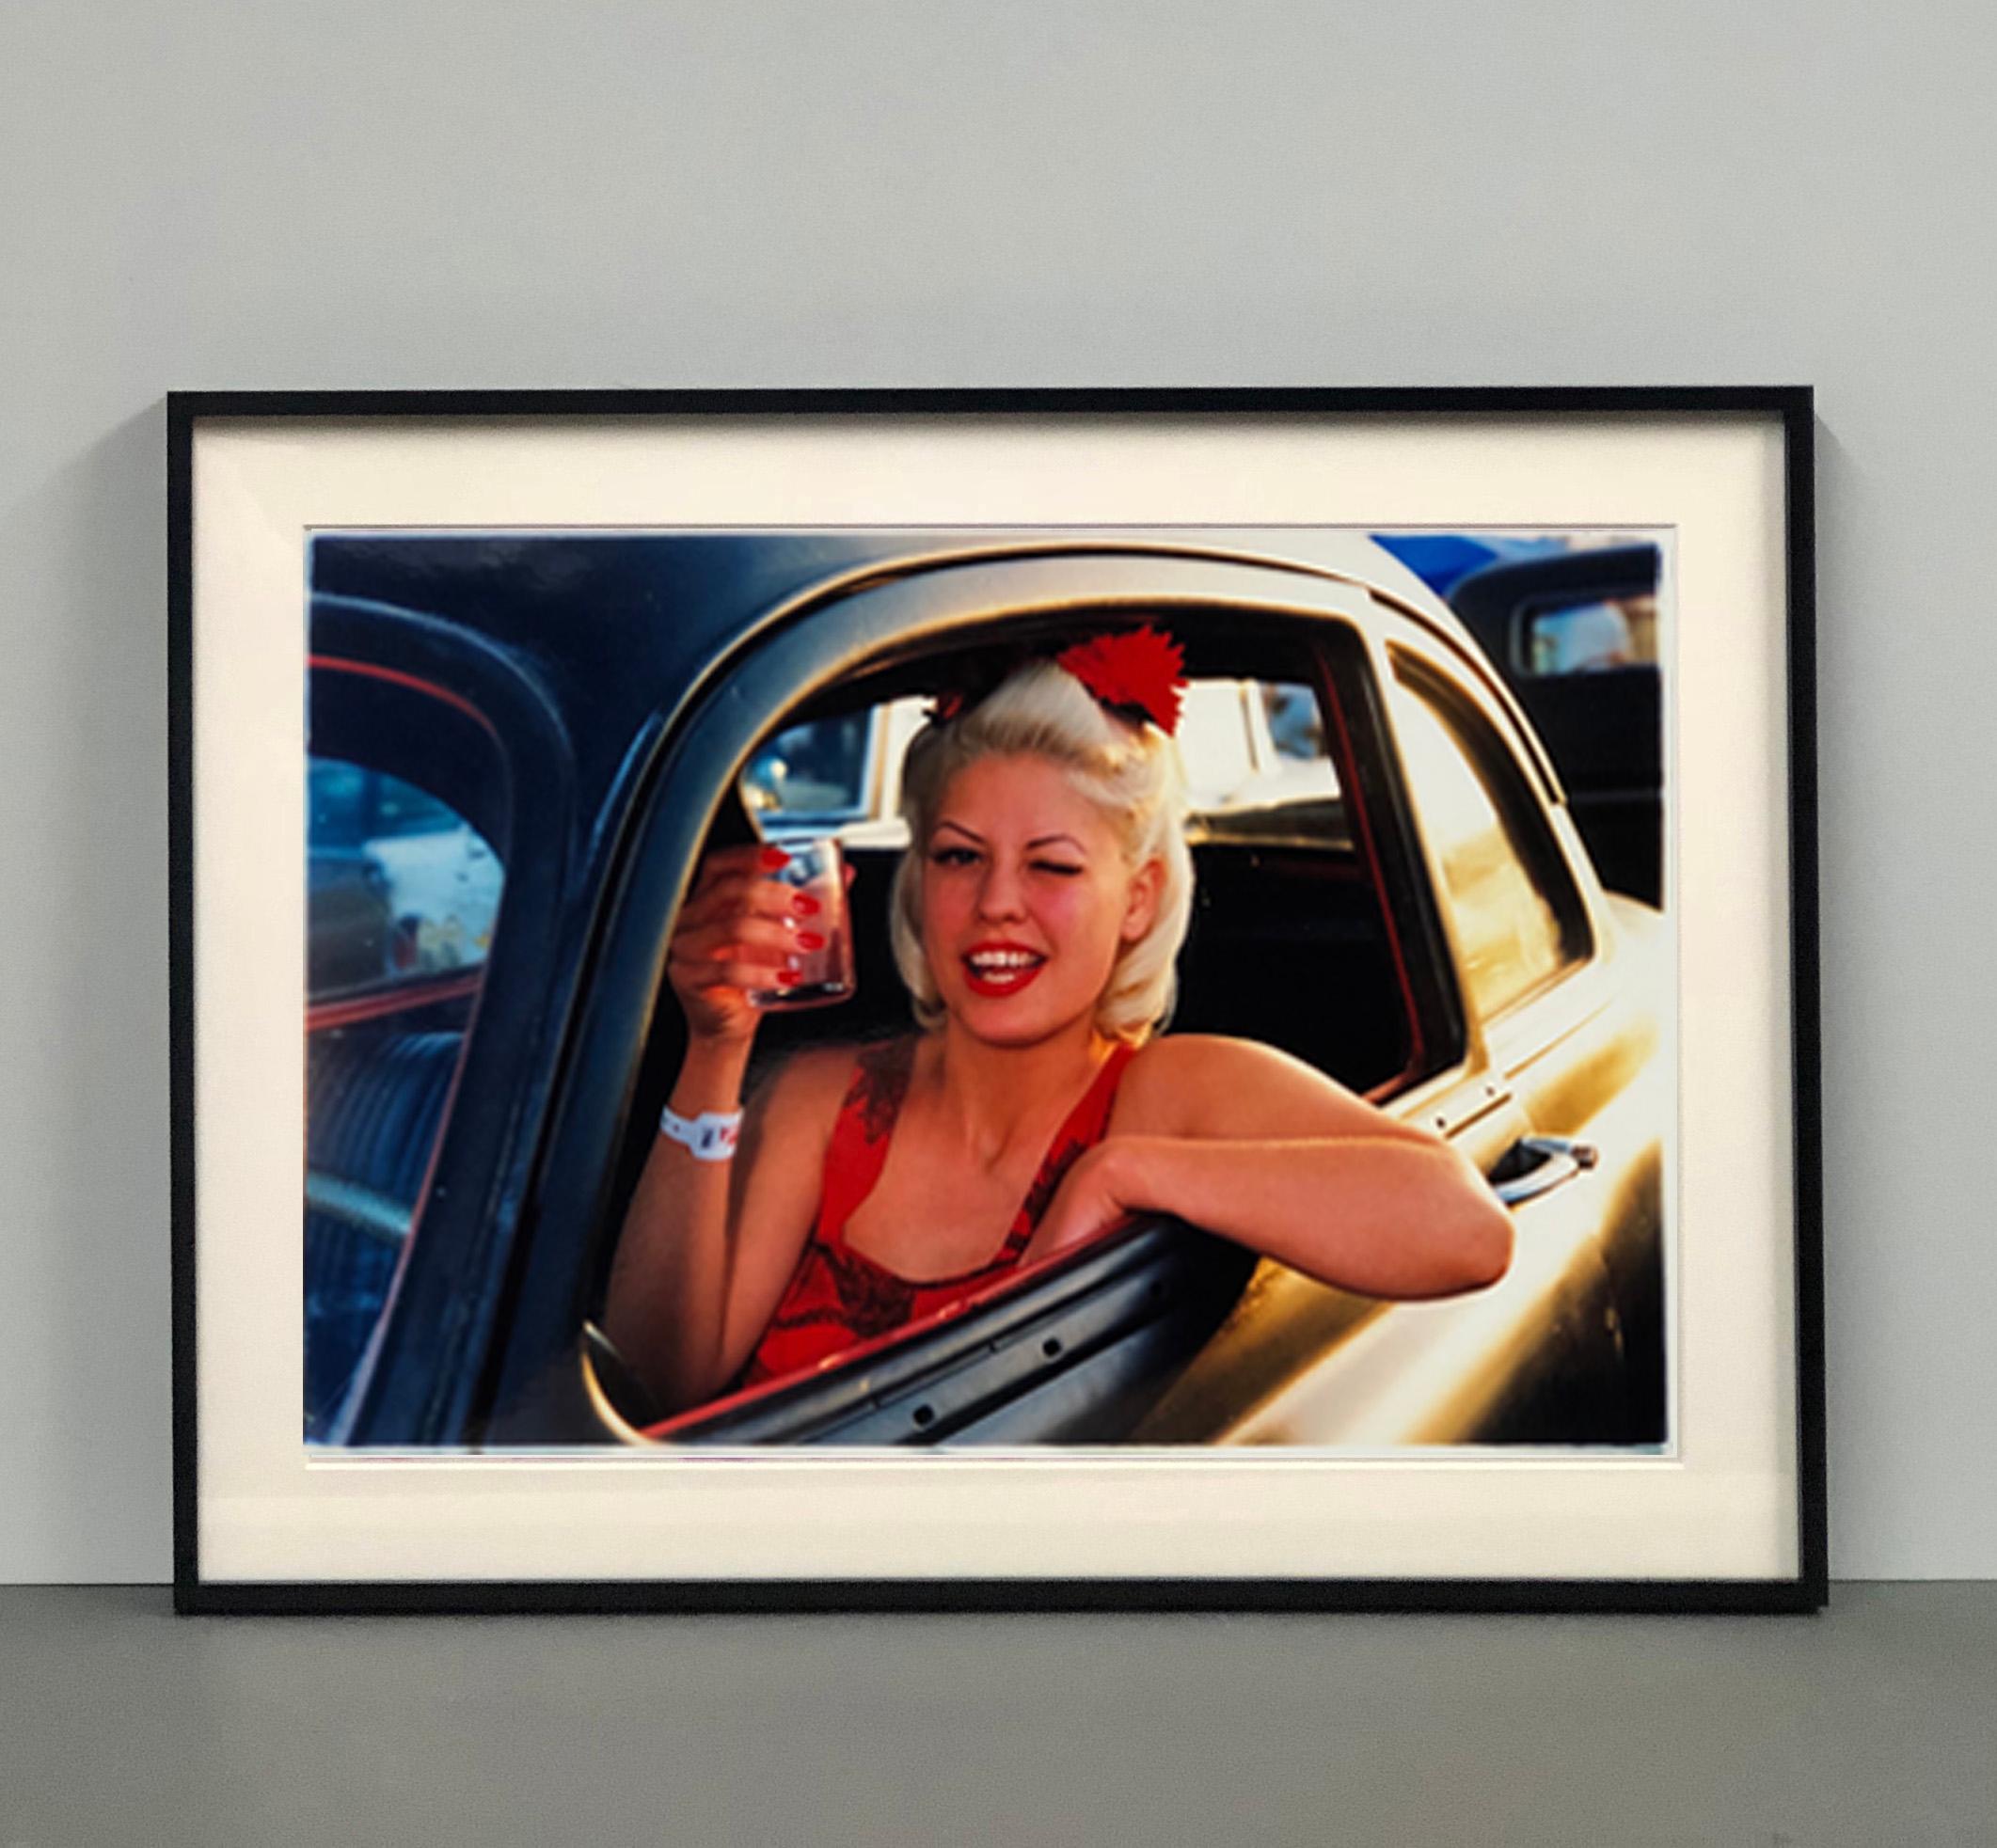 Lisa - Dragstrip Girl, Las Vegas - photographie de portraits contemporains en couleur - Print de Richard Heeps